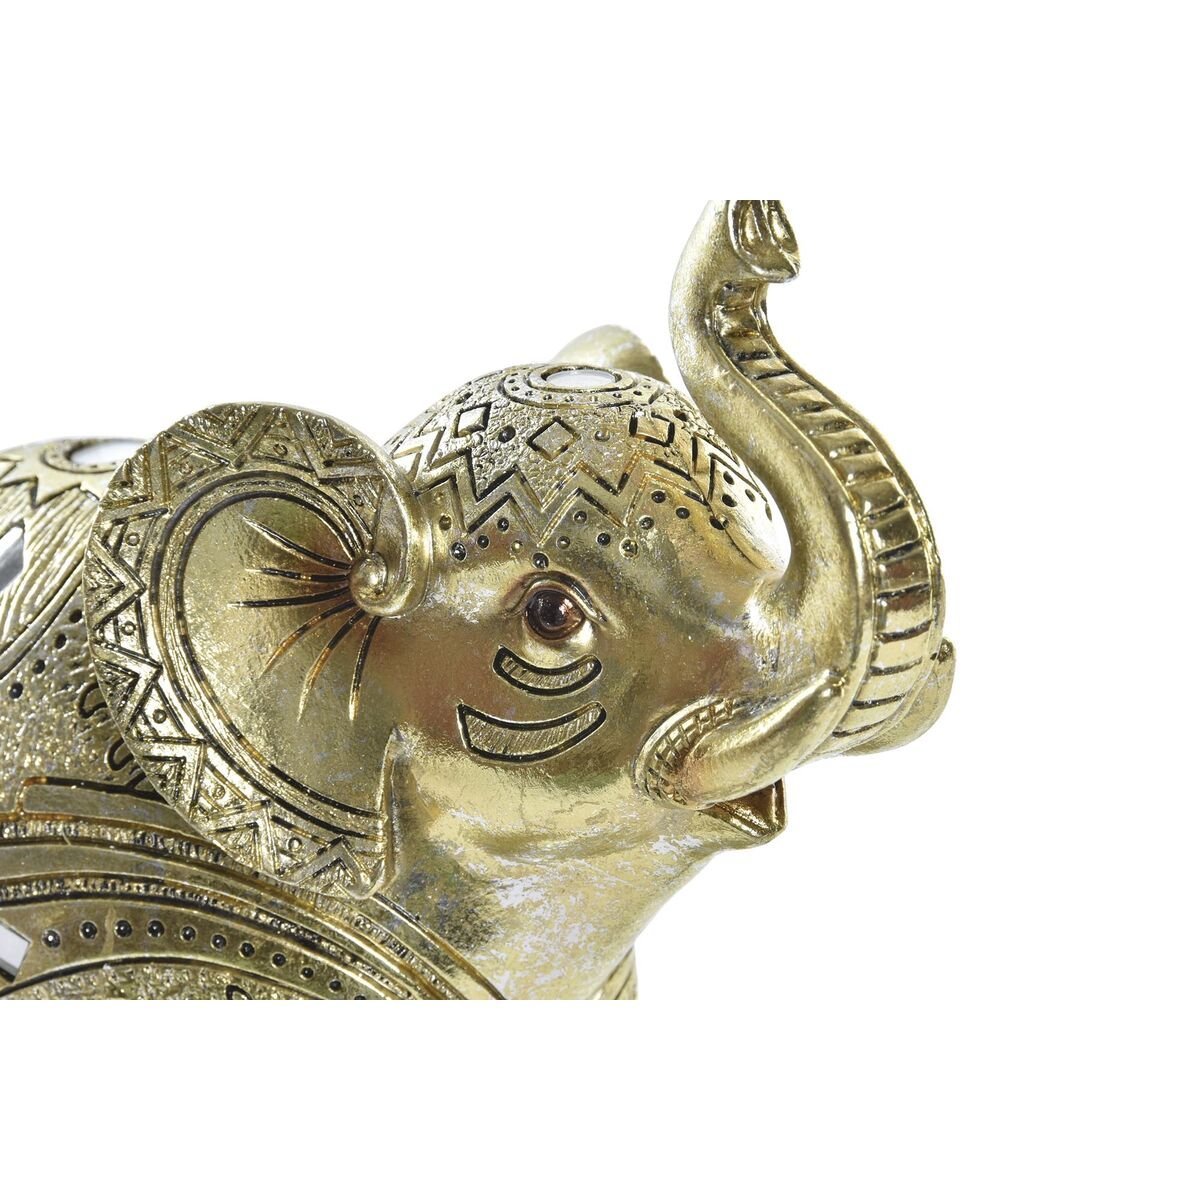 Zlatni slon izrezbaren 19 x 8 x 18 cm